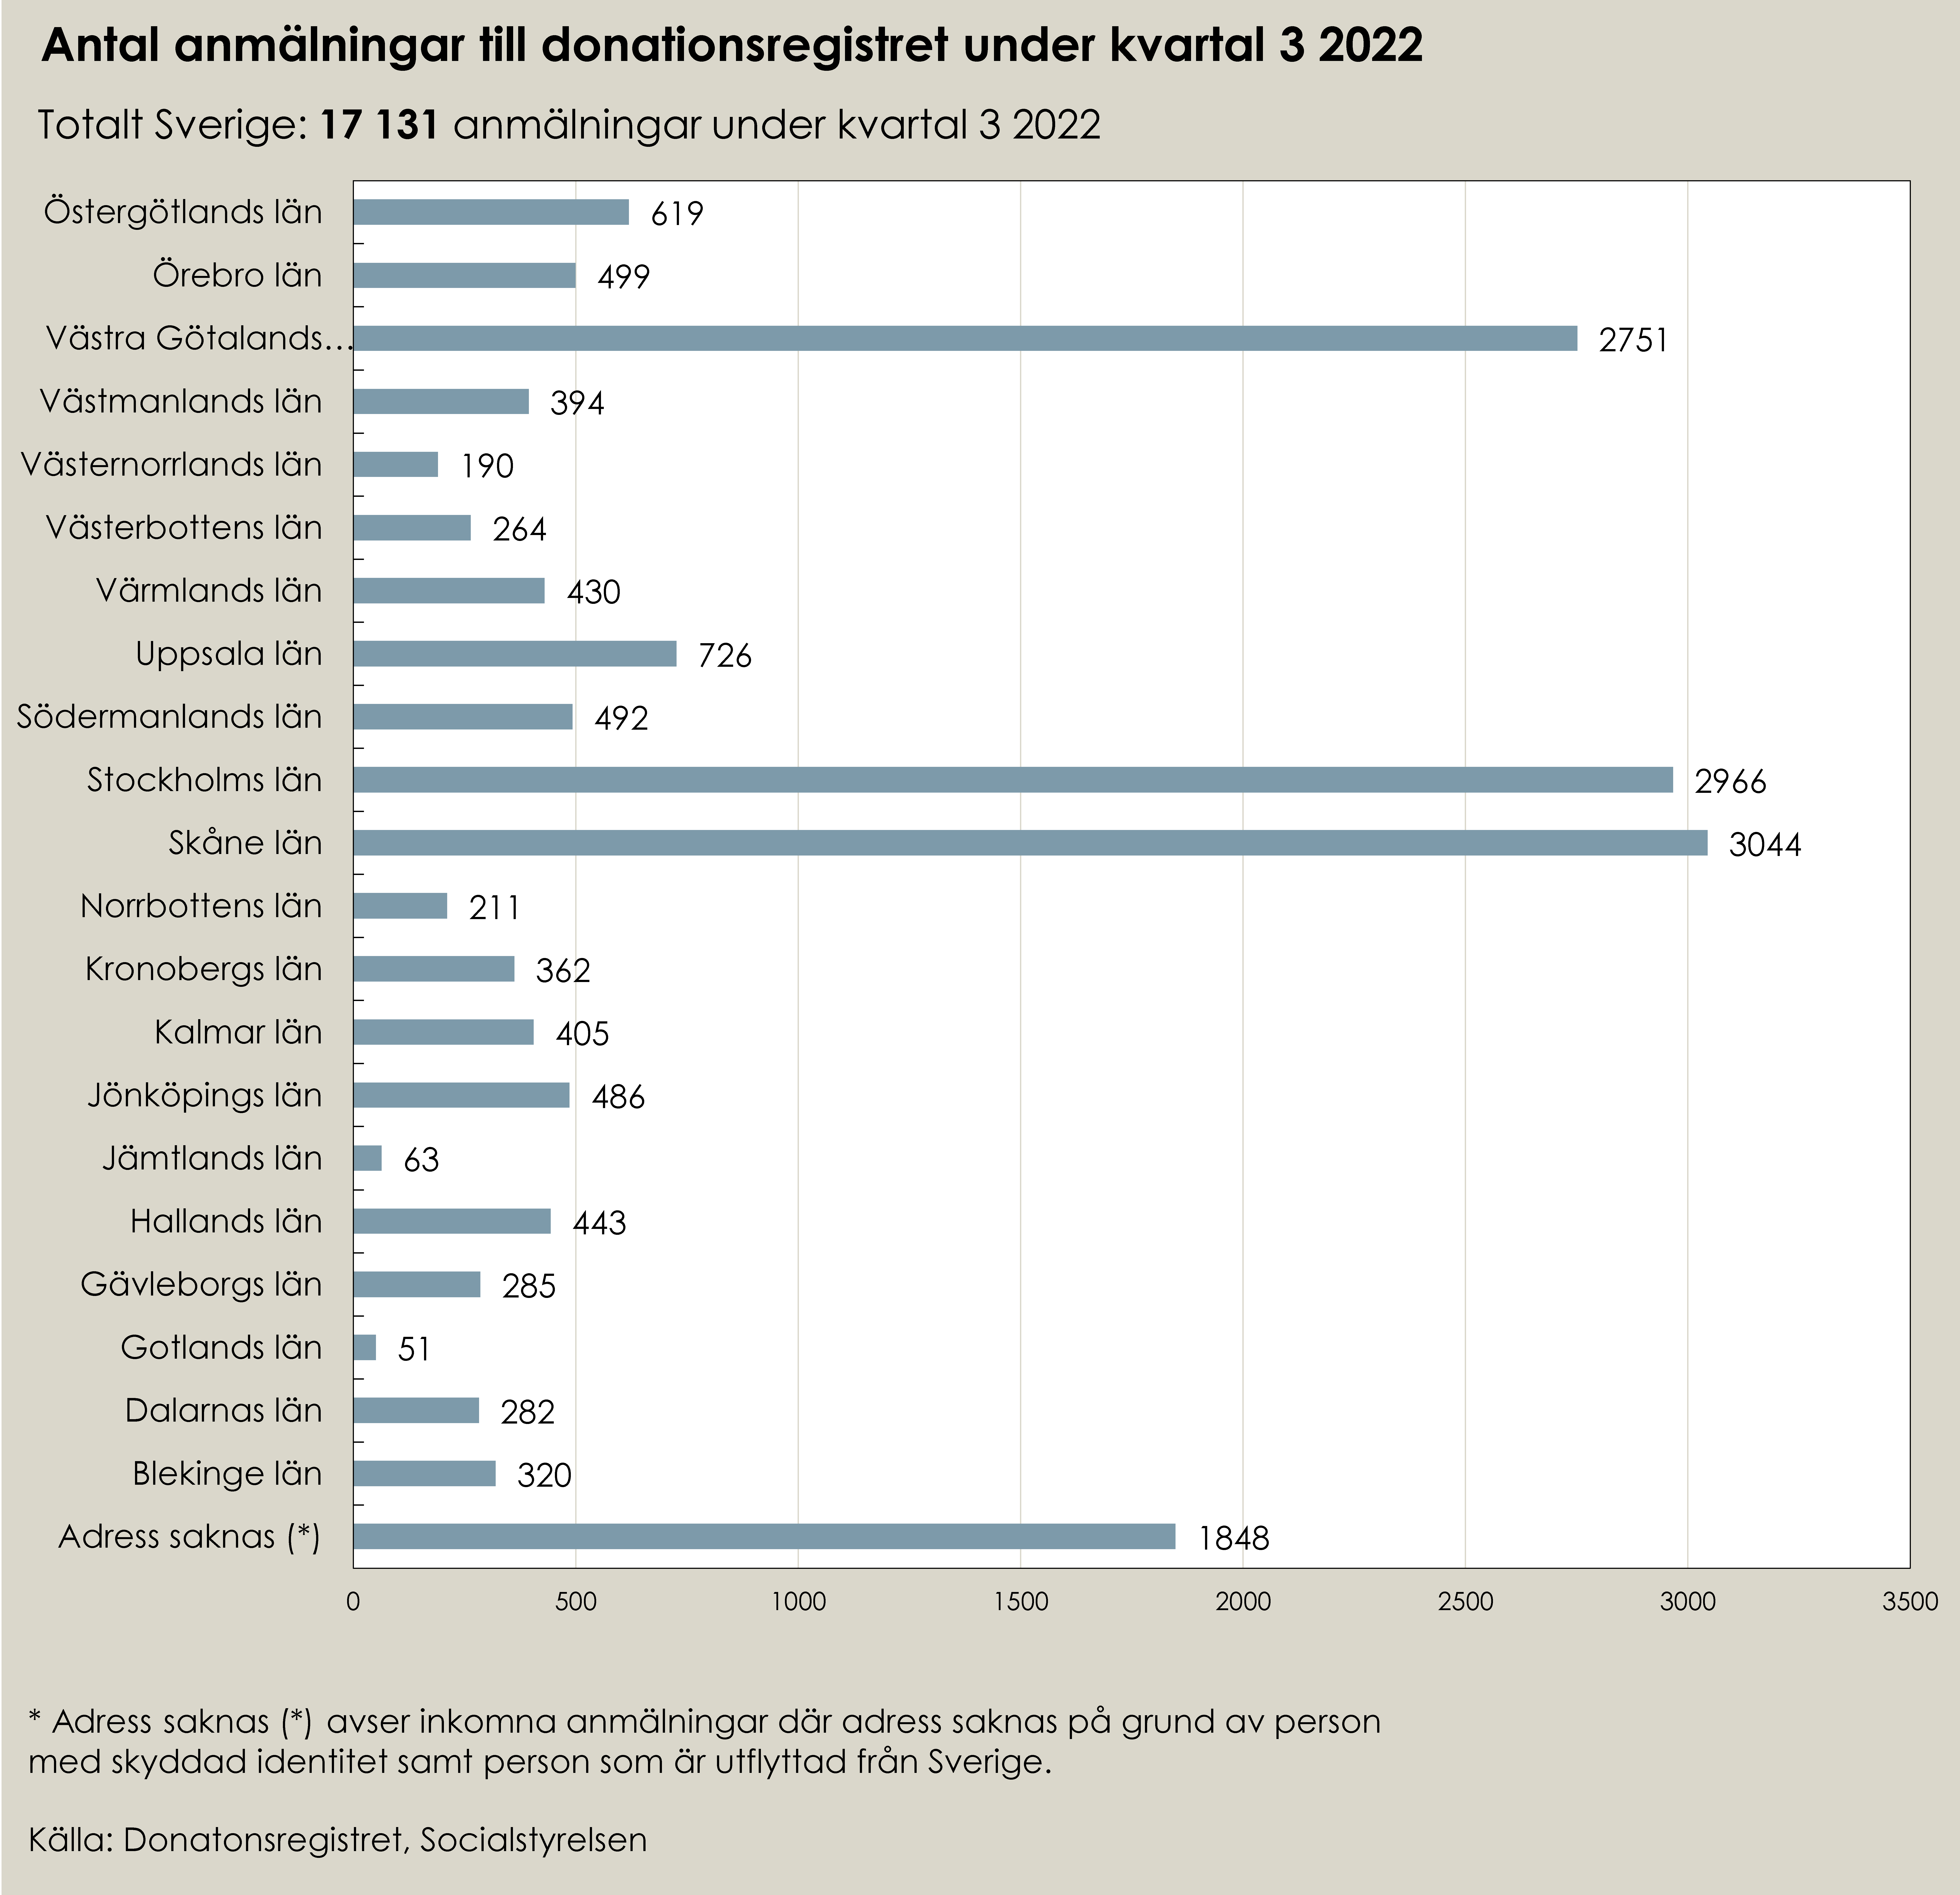 Tabell som visar statstik för antal anmälningar till donationsregistret tredje kvartalet 2022